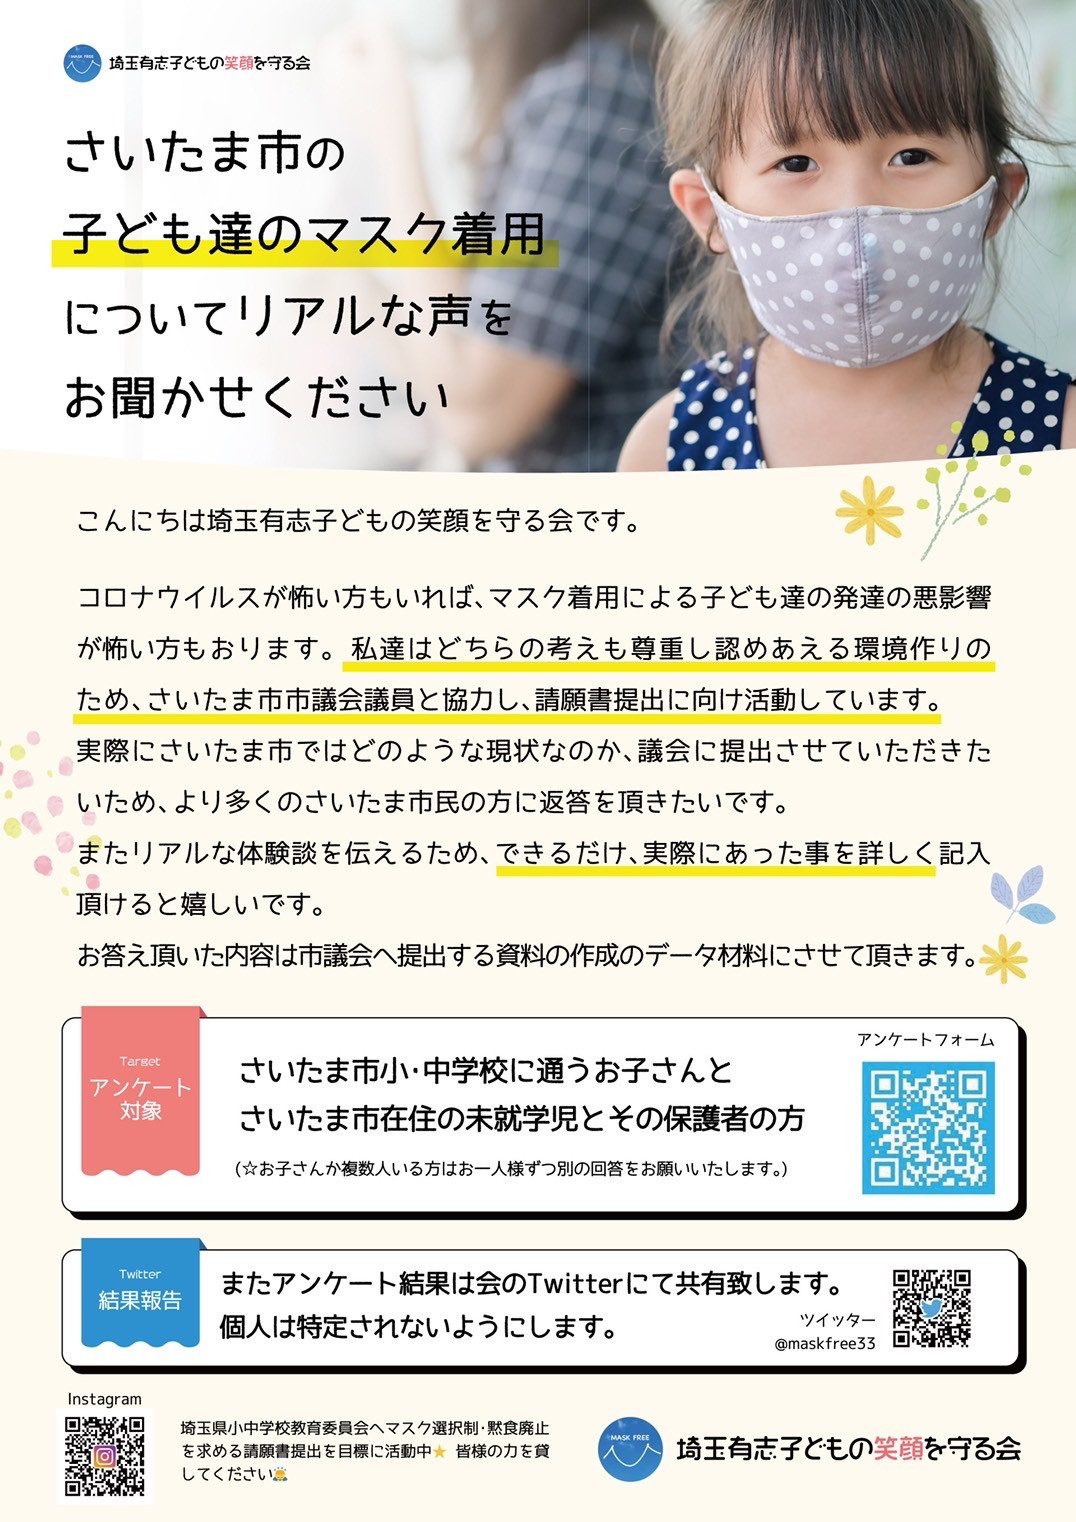 埼玉県さいたま市 埼玉有志子どもの笑顔を守る会より【子どものマスク着用についてのアンケートにご協力お願いします】